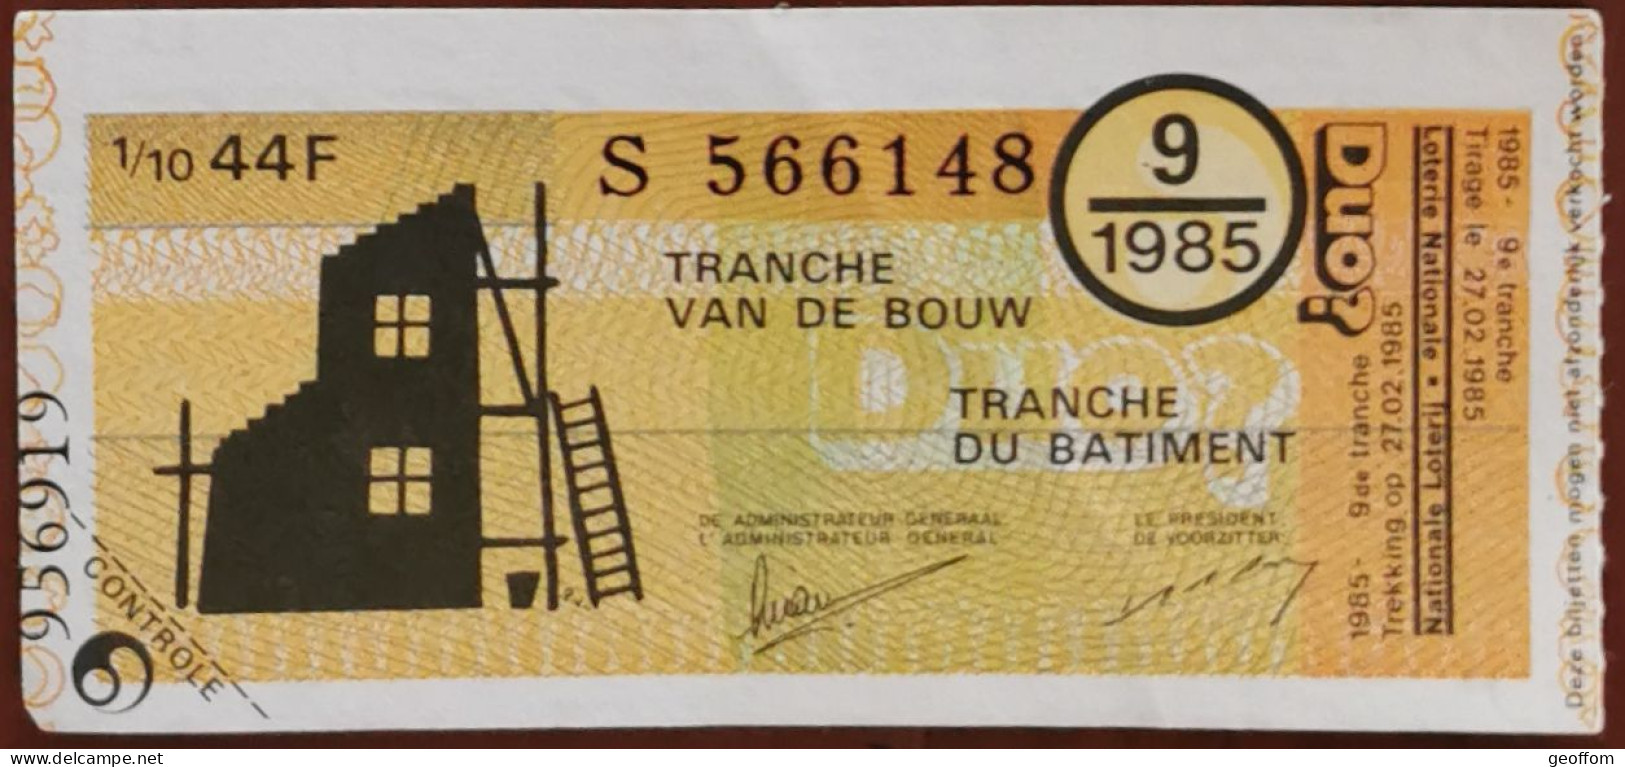 Billet De Loterie Nationale Belgique 1985 9e Tranche Du Bâtiment - 27-2-1985 - Billetes De Lotería